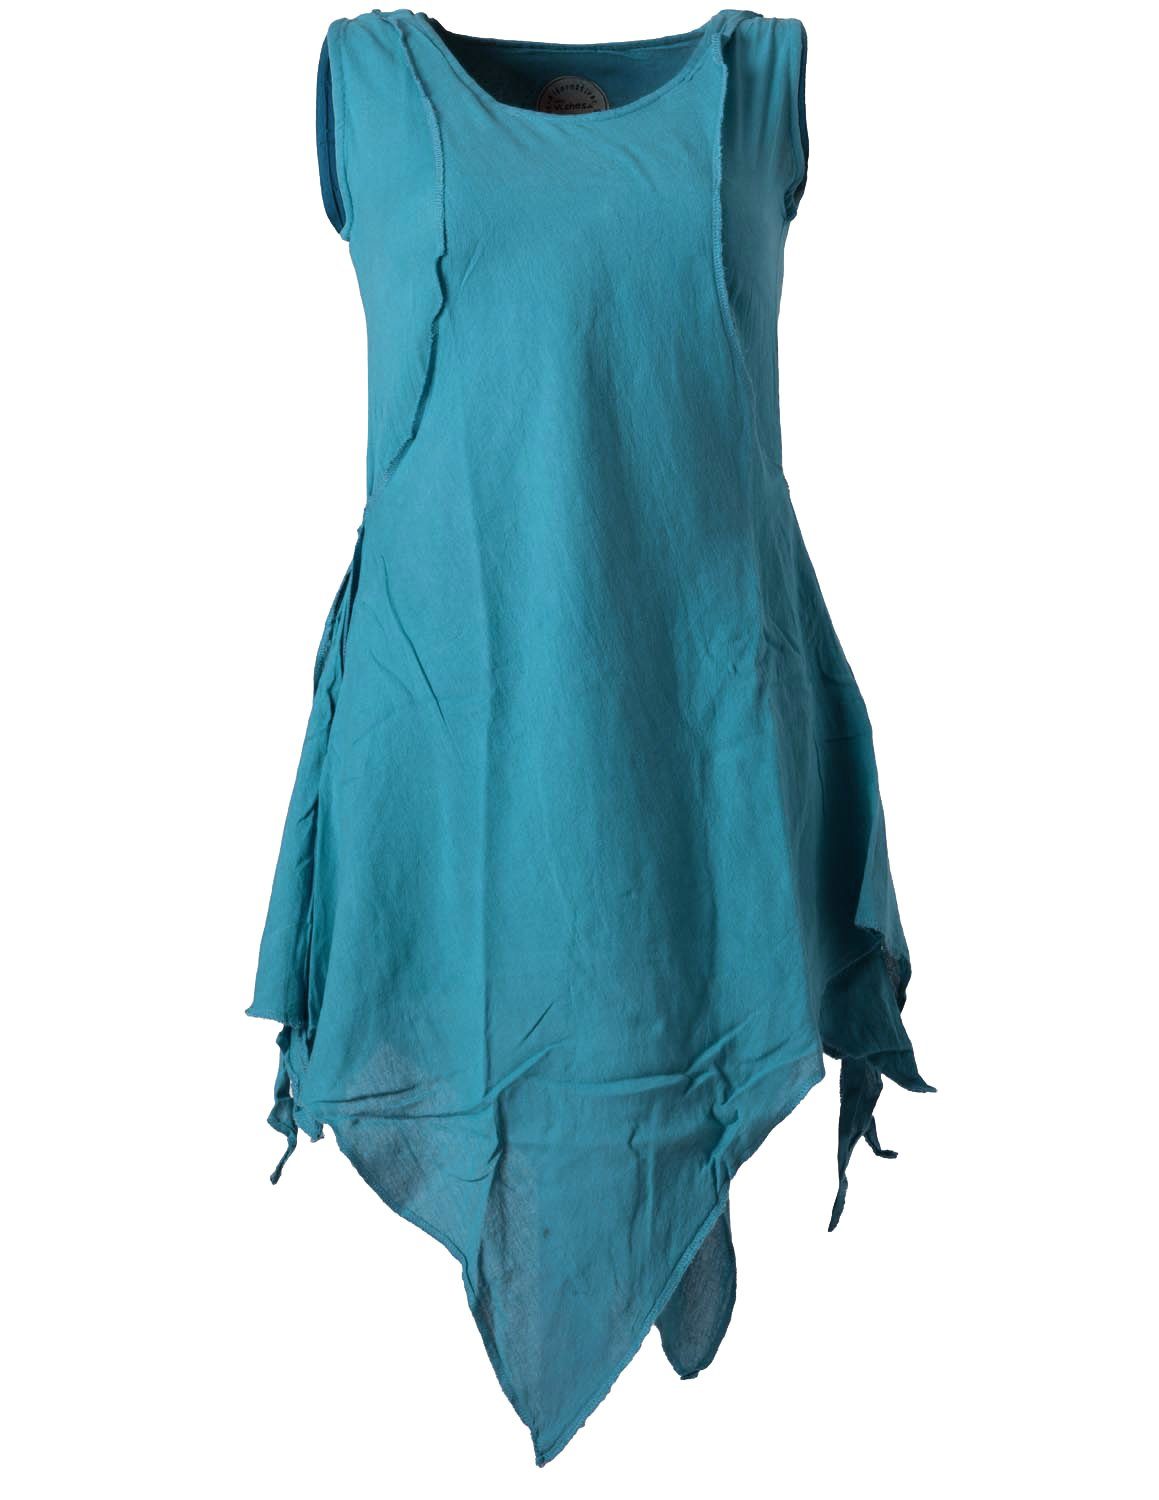 Vishes Tunikakleid Zipfeliges Lagenlook Shirt Tunika im Used-Look Hippie, Ethno, Elfen, Goa Style türkis | Blusenkleider